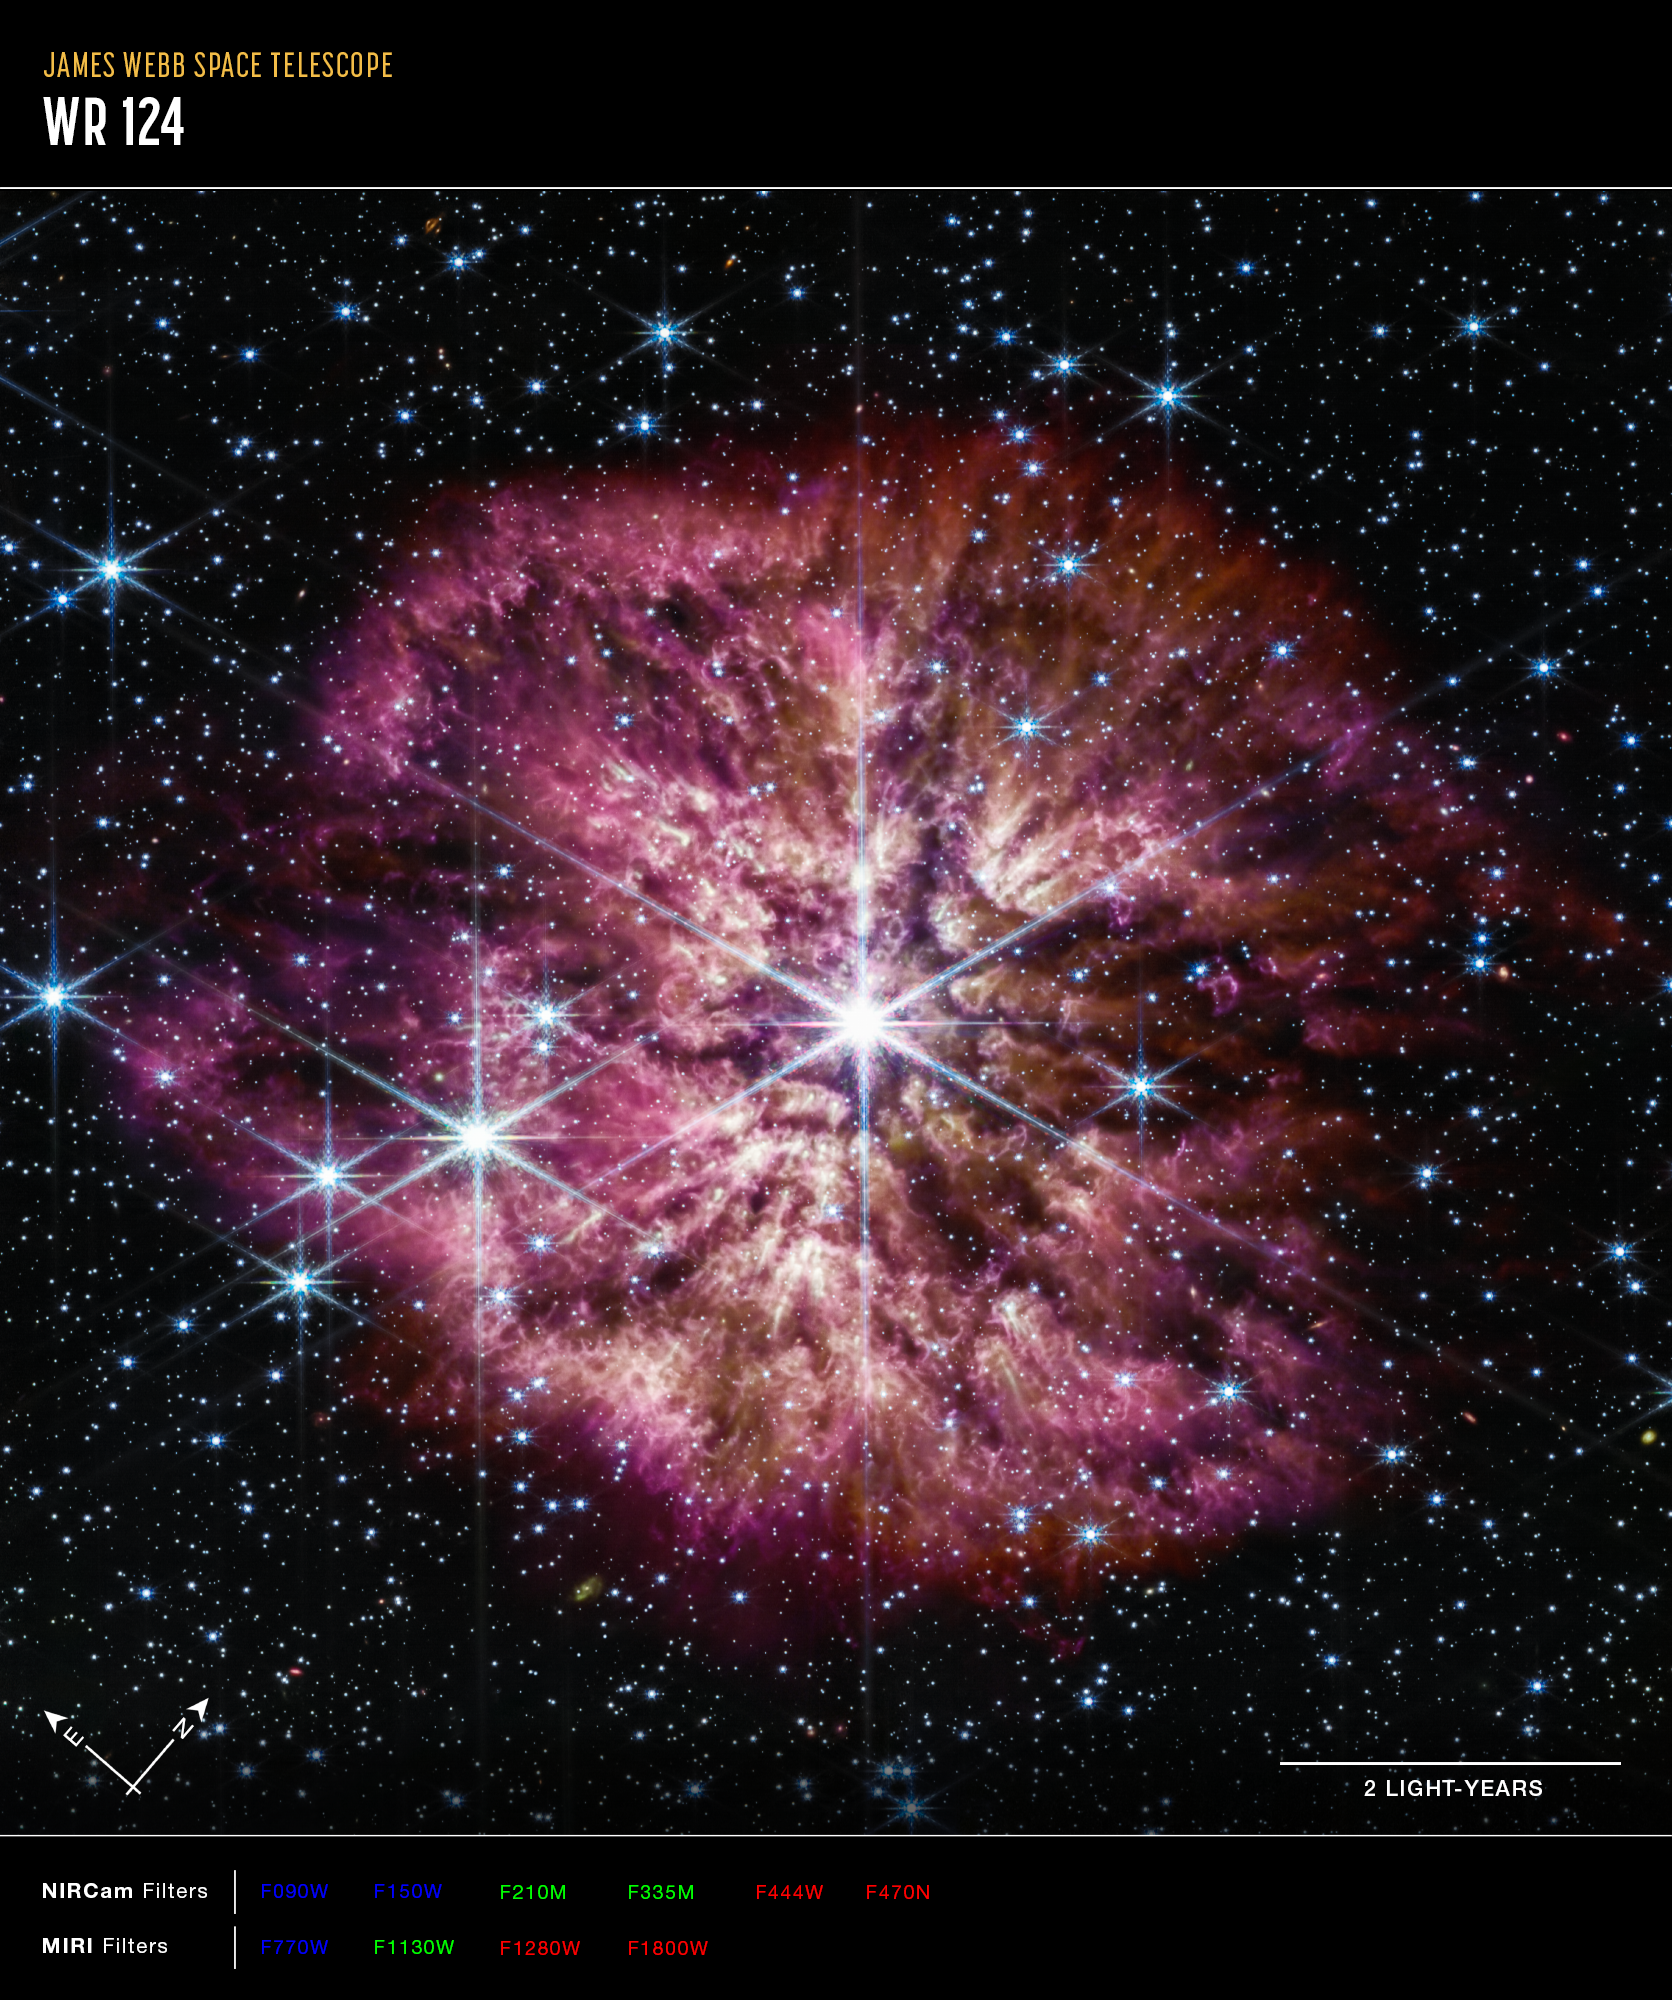 Na ilustracji (3): Gwiazda Wolf Rayet 124 (WR 124) jest widoczna w środku połączonego zdjęcia z Teleskopu Webba obejmującego zakres bliskiej (kamera NIRCam) i średniej (MIRI) podczerwieni. Gwiazda centralna prezentuje charakterystyczne promienie dyfrakcyjne („spajki”) na zdjęciu uzyskanym przez kamerę NIRCam, które są efektem instrumentalnym spowodowanym konstrukcją Teleskopu Webba. Na zdjęciu z NIRCam jasność gwiazdy WR124 jest zrównoważona ze słabiej świecącym gazem i pyłem ją otaczającym. Natomiast instrument MIRI ujawnia strukturę samej mgławicy. Źródło: NASA, ESA, CSA, STScI, Webb ERO Production Team